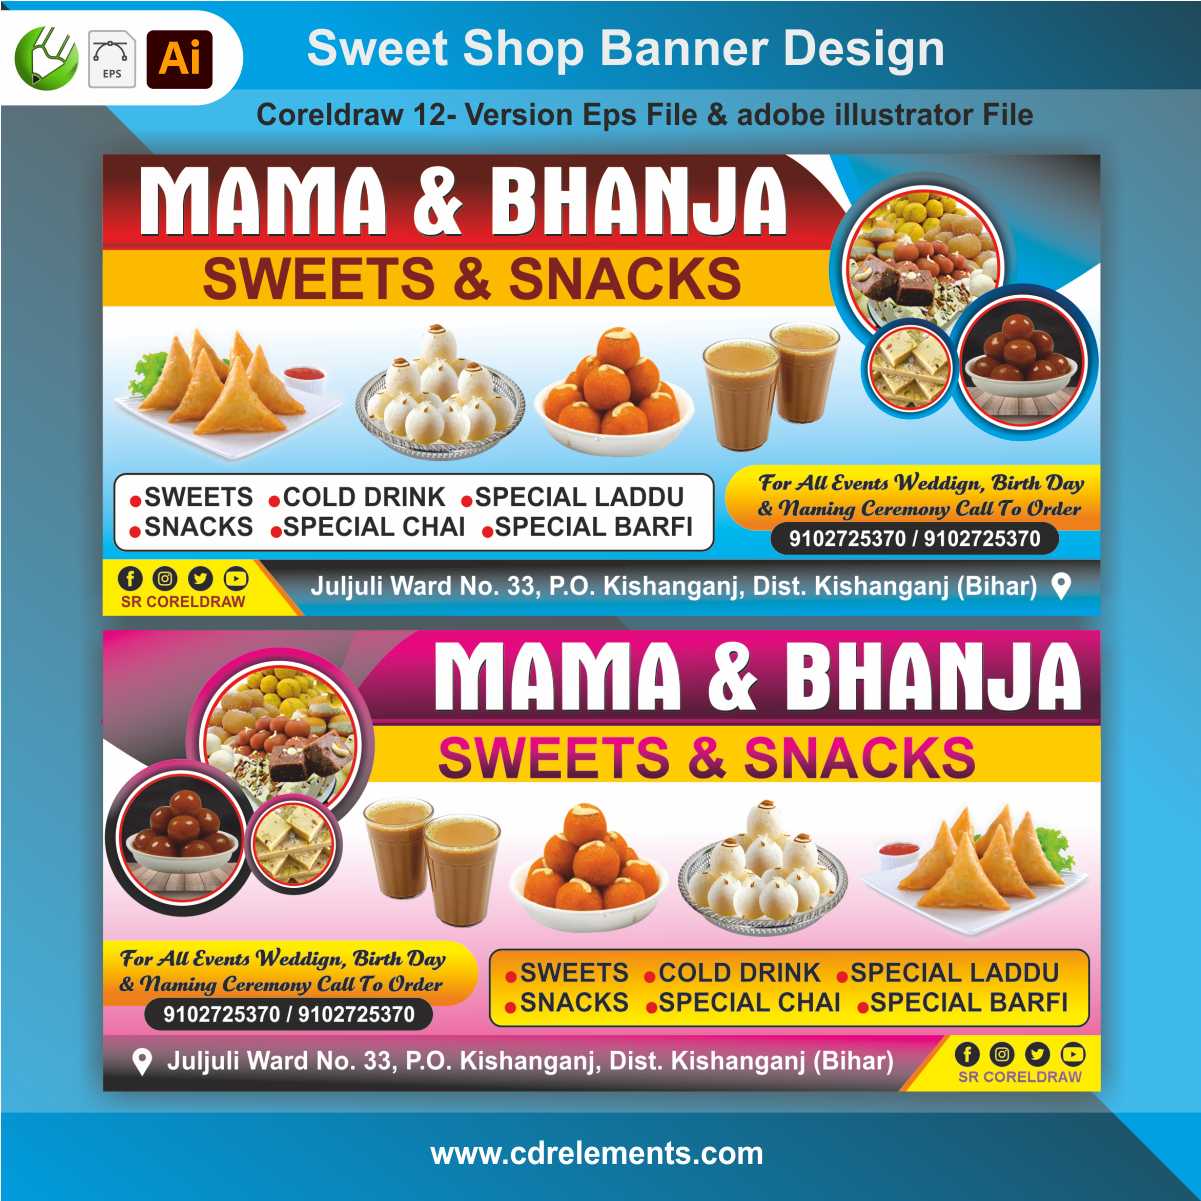 Sweet Shop Banner Flex Design Cdr File Eps File & adobe illustrator File 